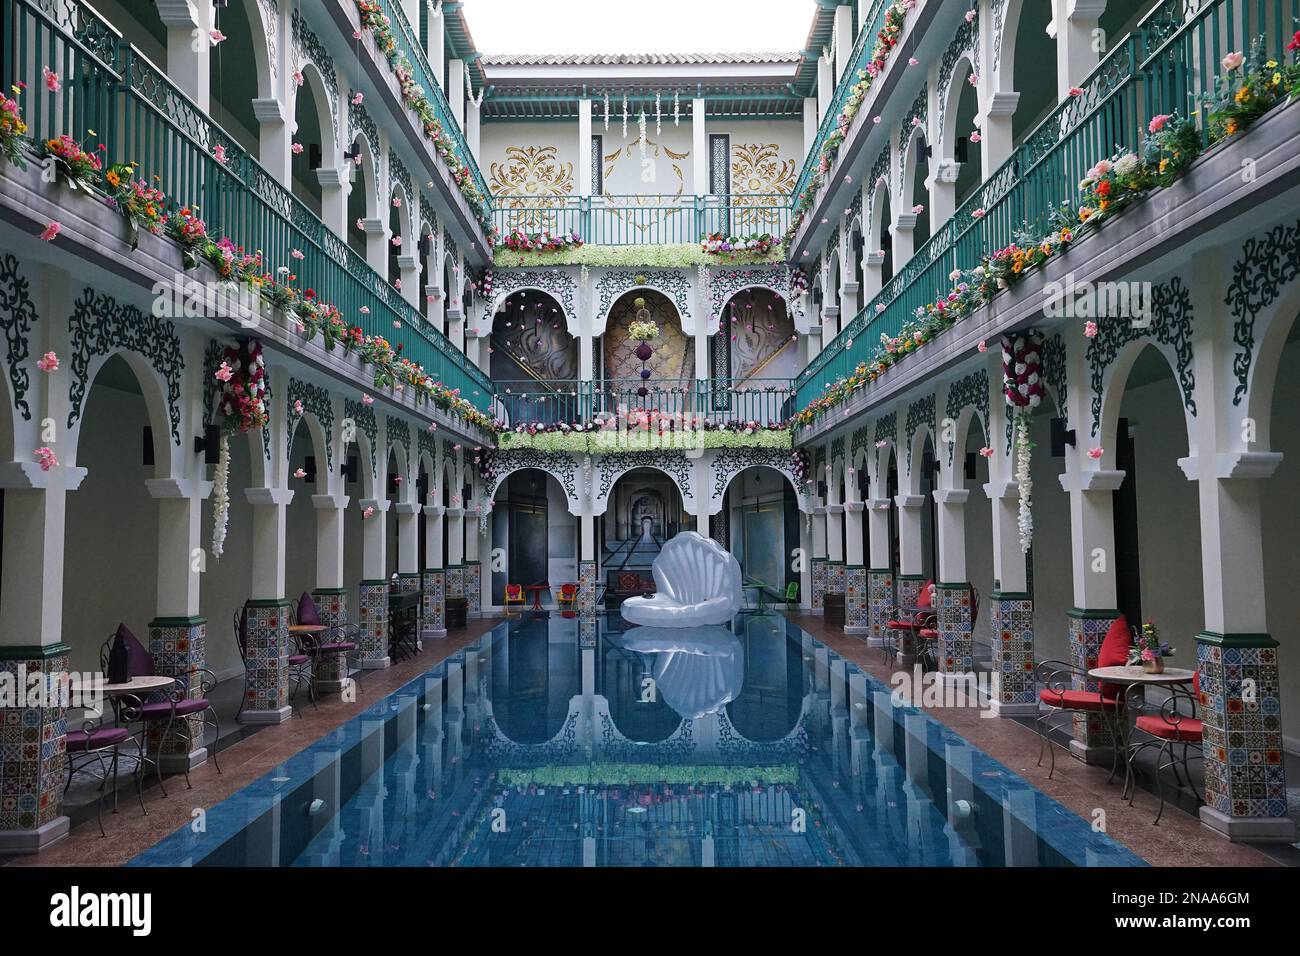 Architettura esterna, design e decorazione di un hotel arabo ispirato alla cultura esotica e mistica marocchina in Thailandia Foto Stock